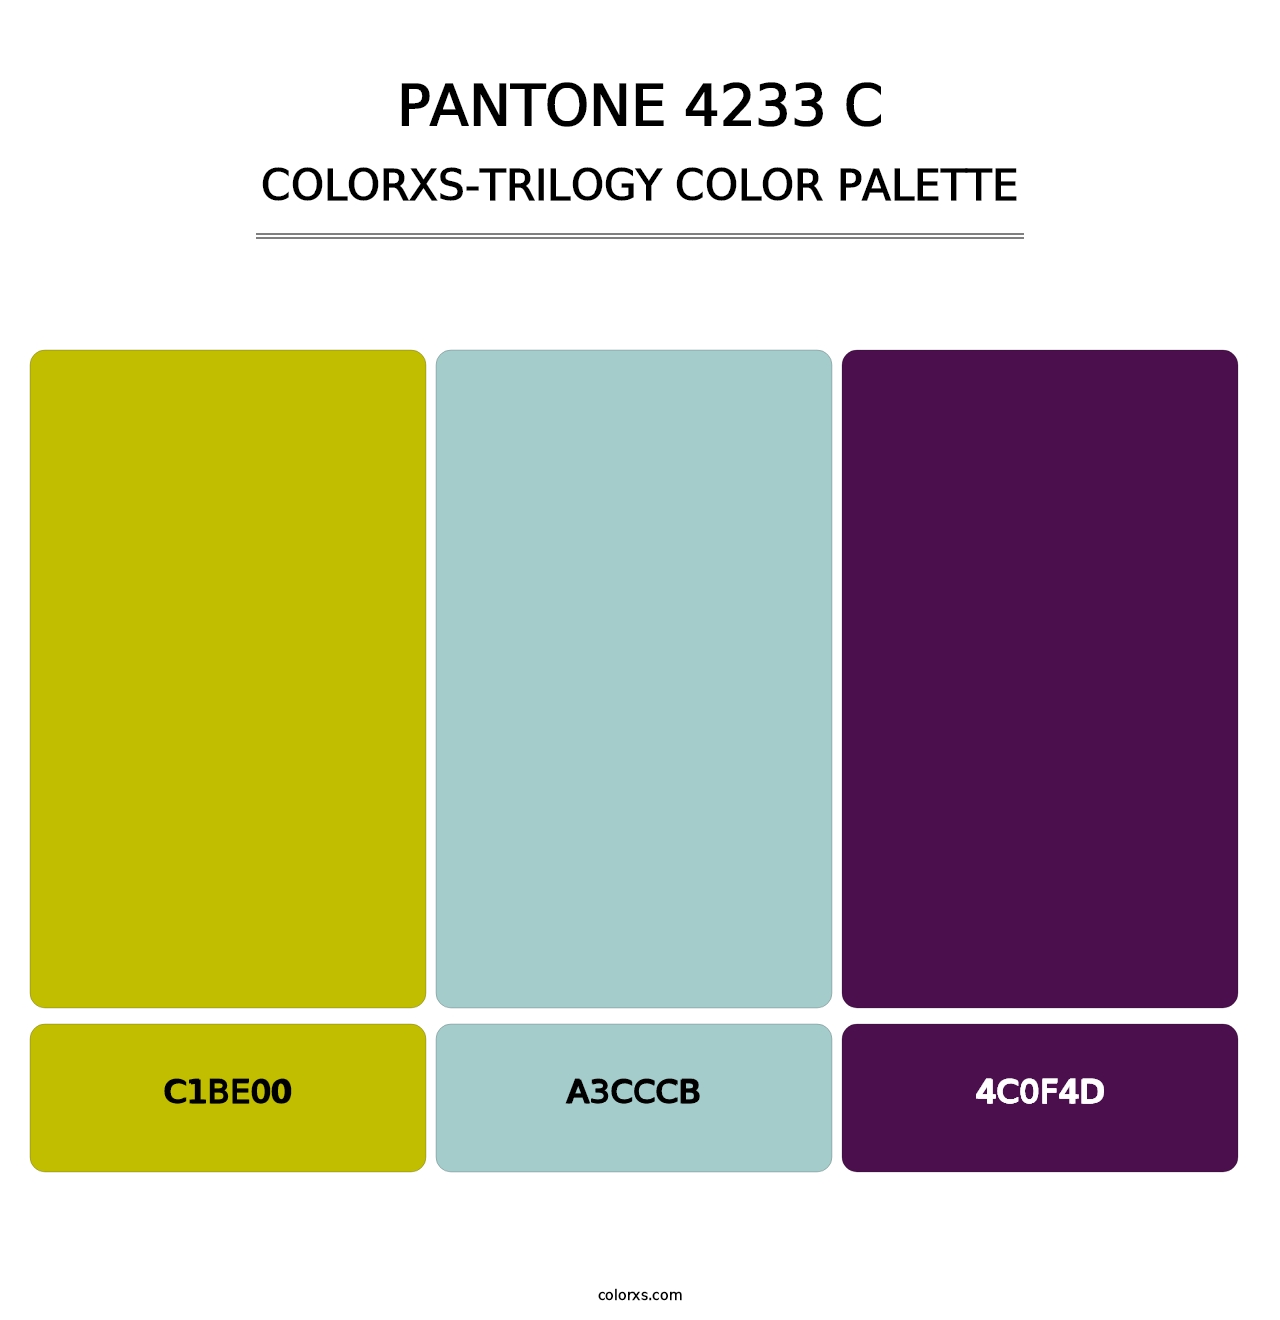 PANTONE 4233 C - Colorxs Trilogy Palette